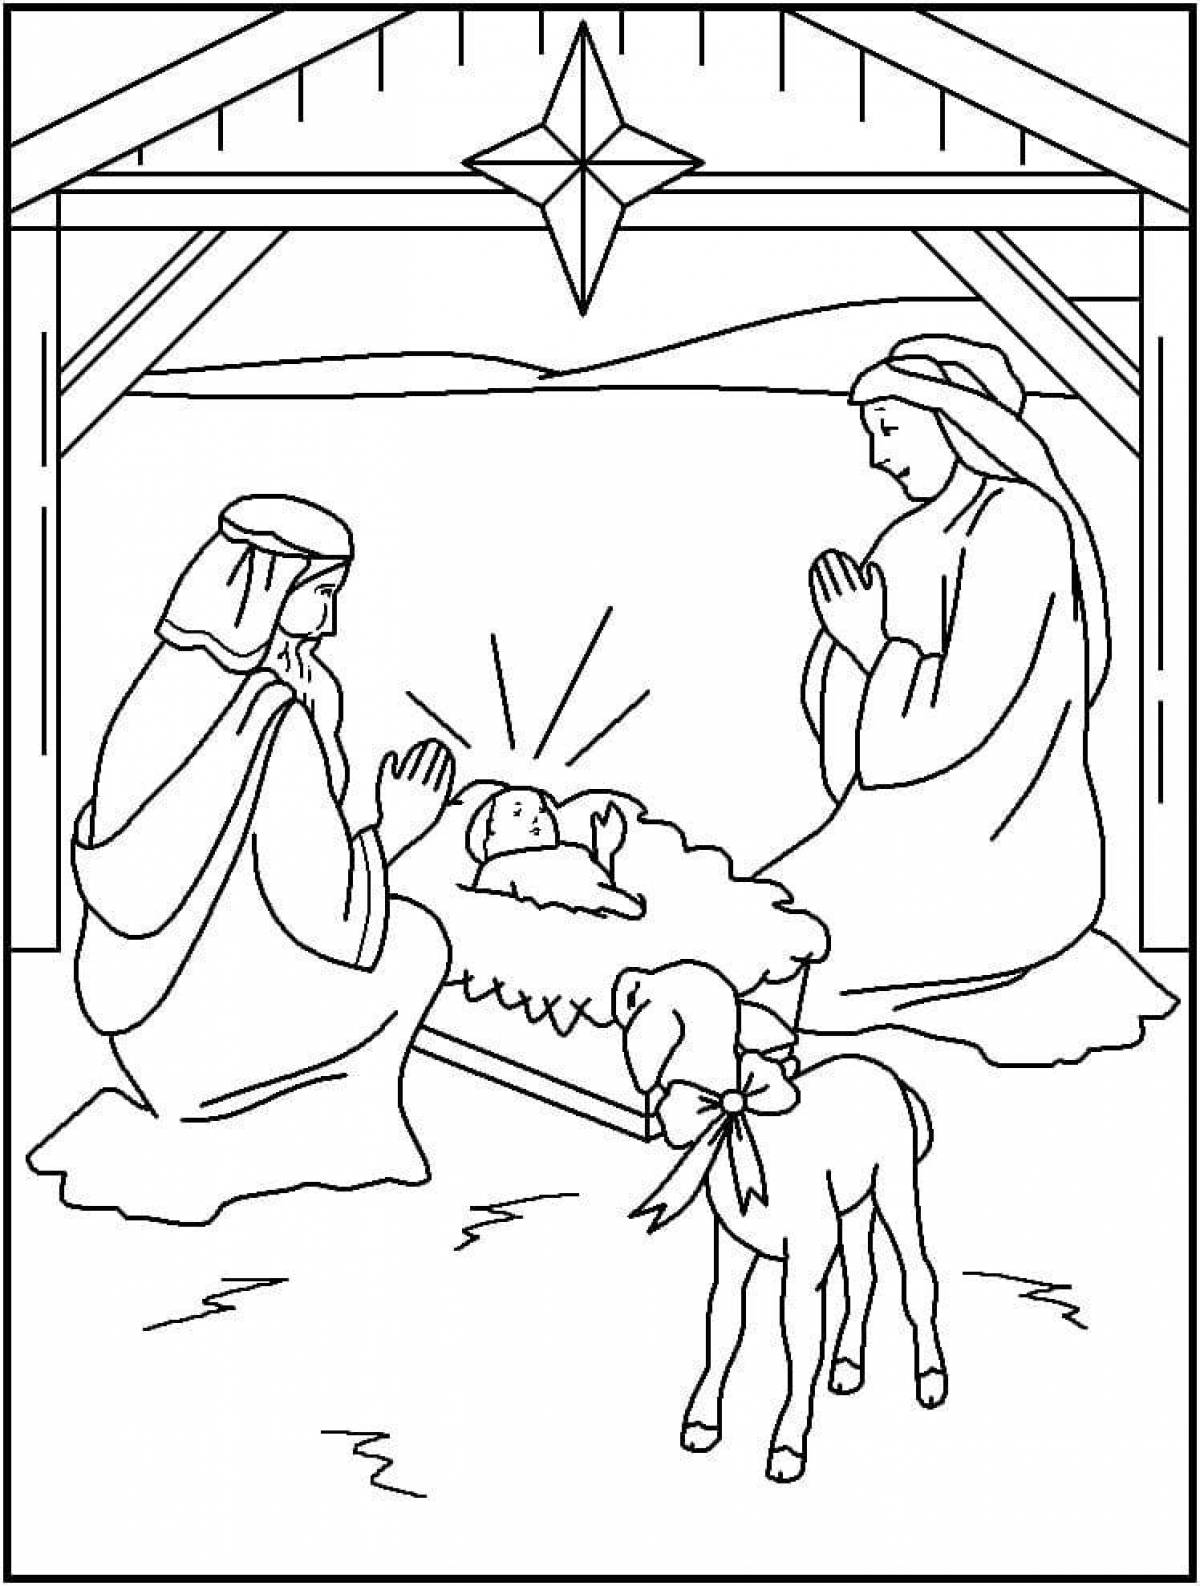 Dazzling nativity scene coloring